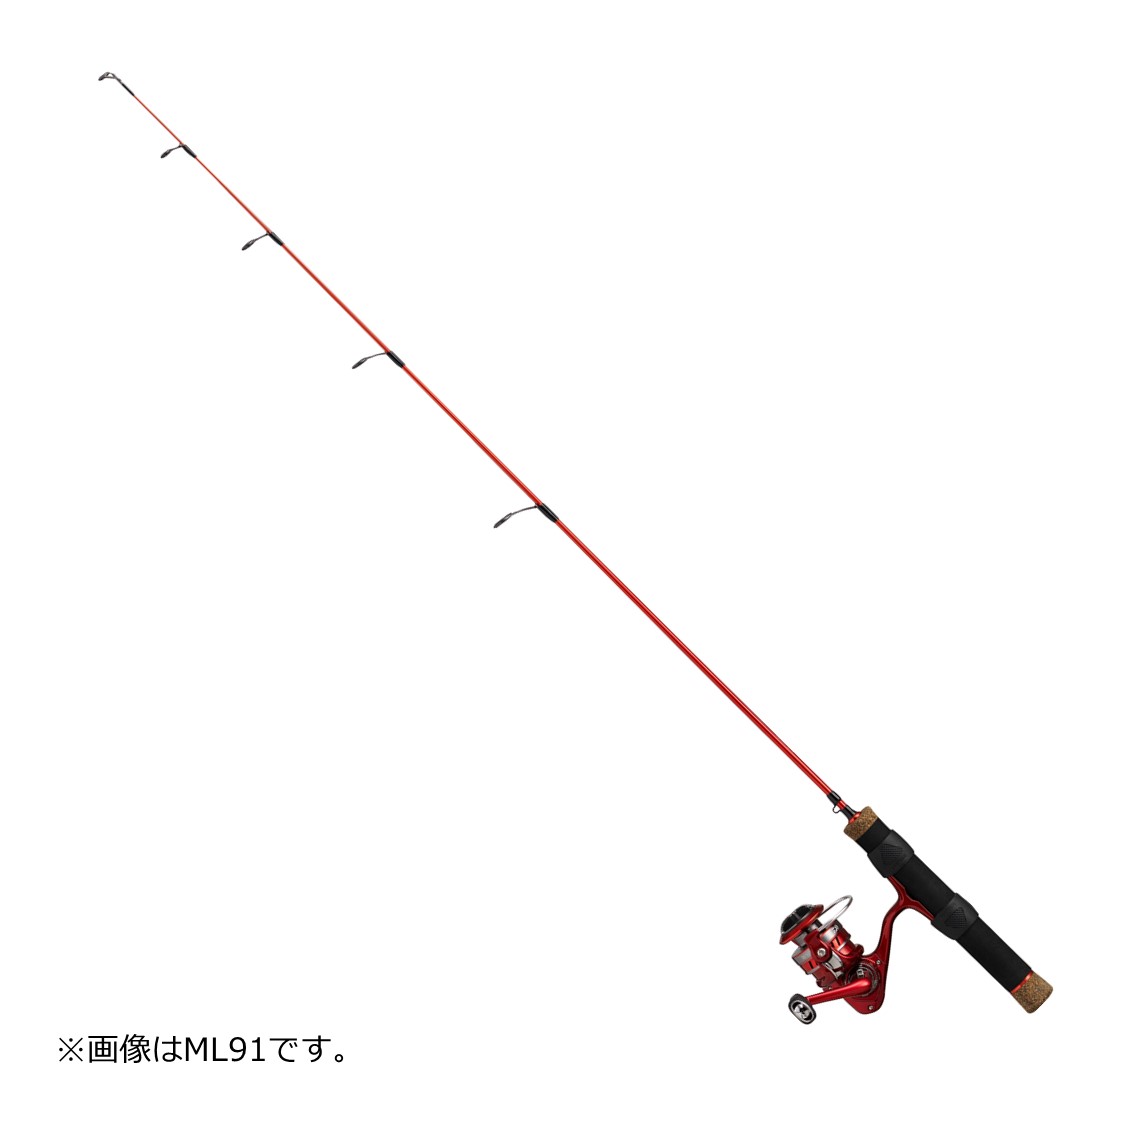 ダイワ Mc 1000ml 111 釣り竿 セット コンパクトロッド 釣り具の販売 通販なら フィッシング遊 Web本店 ダイワ シマノ がまかつの釣具ならおまかせ